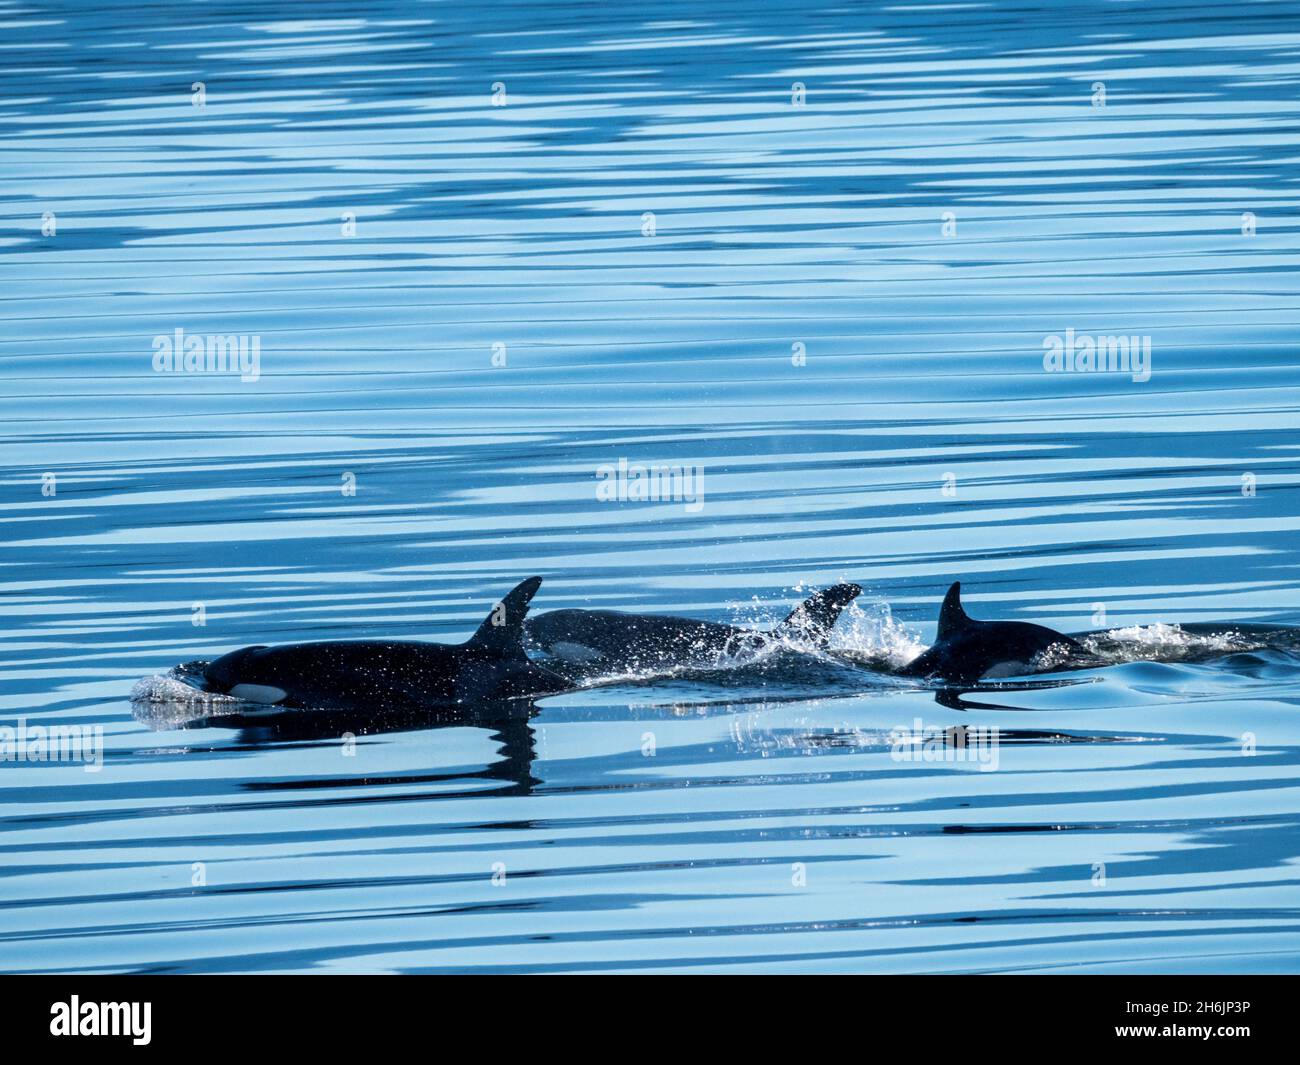 Un groupe d'épaulards (Orcinus orca, près de la baie d'Alert, île Cormorant, Colombie-Britannique, Canada,Amérique du Nord Banque D'Images